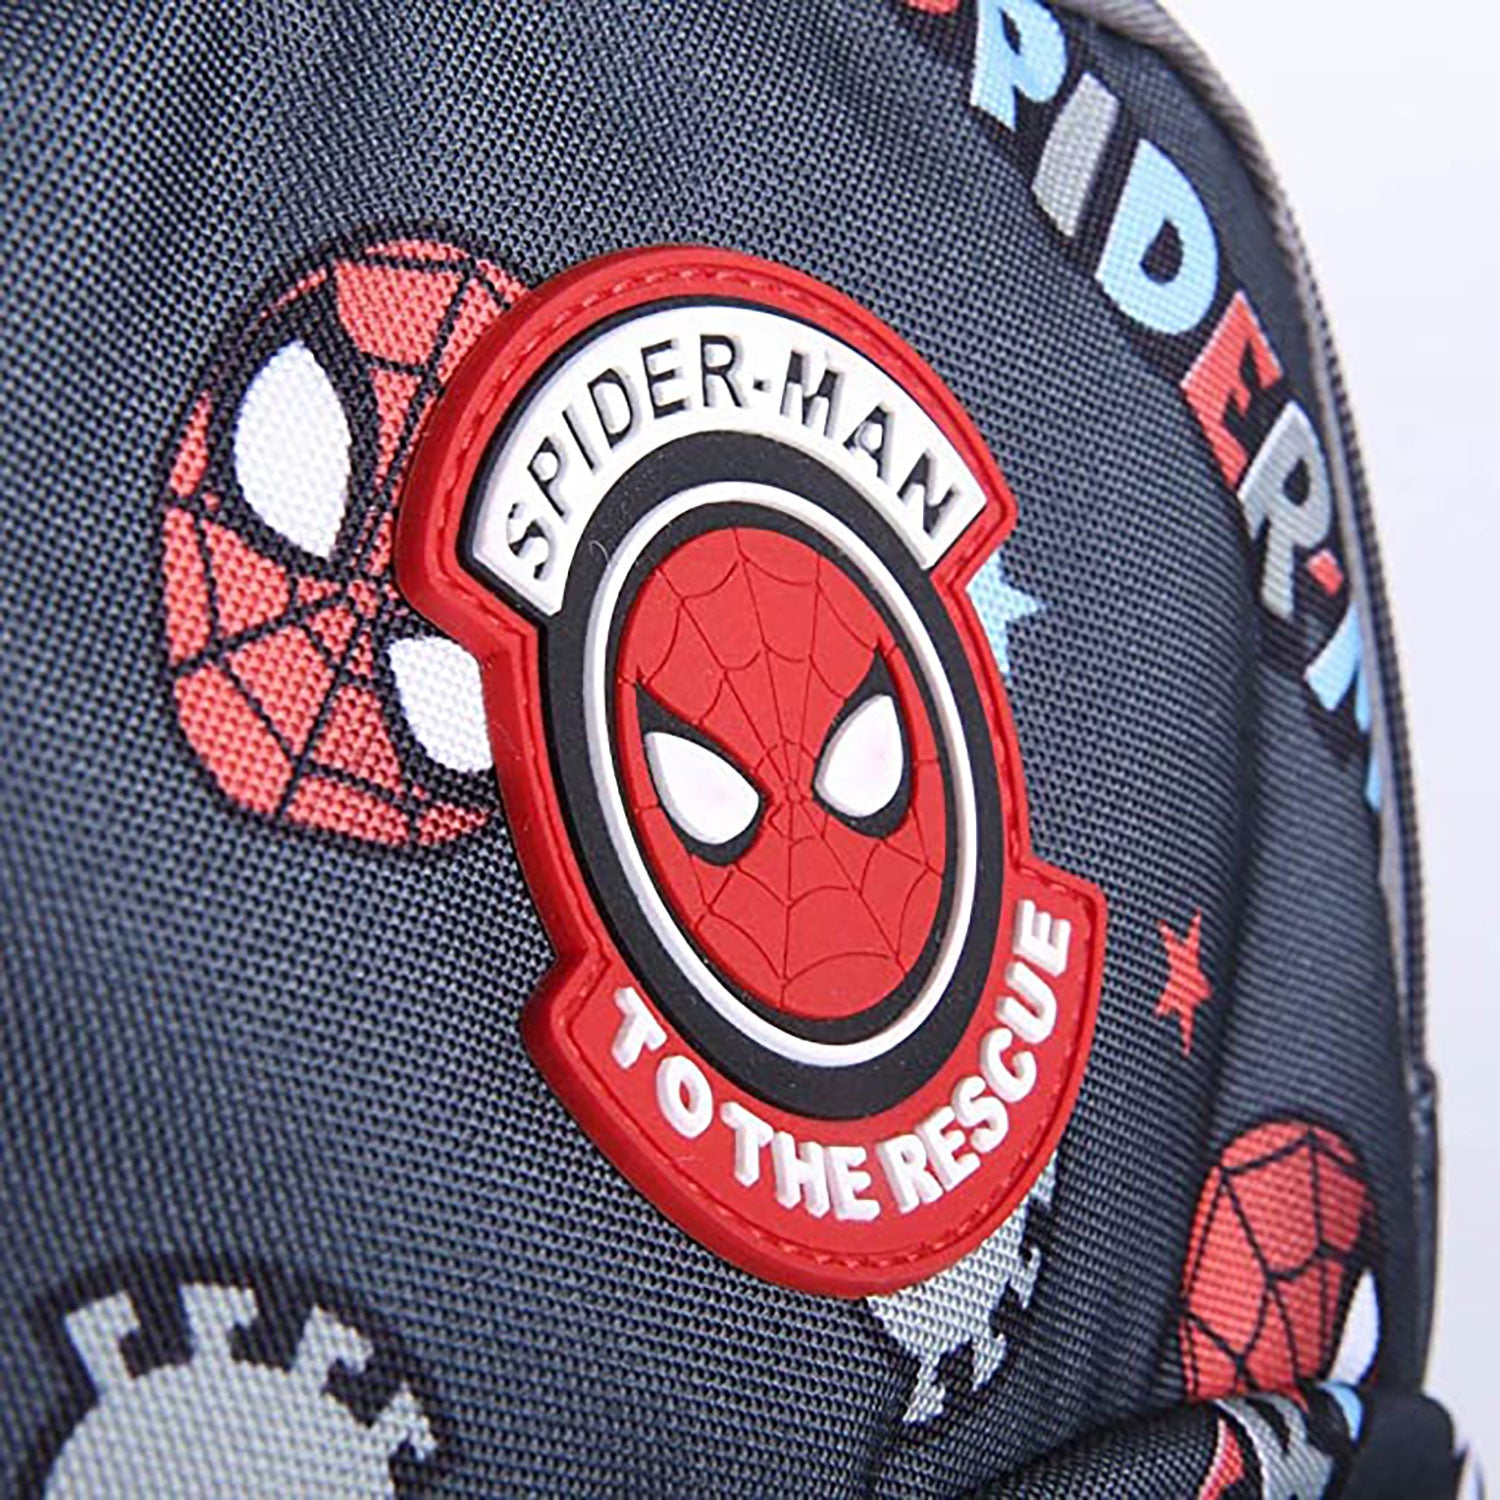 Zaino e astuccio Marvel Spiderman zainetto con bretelle bambino scuola 5546